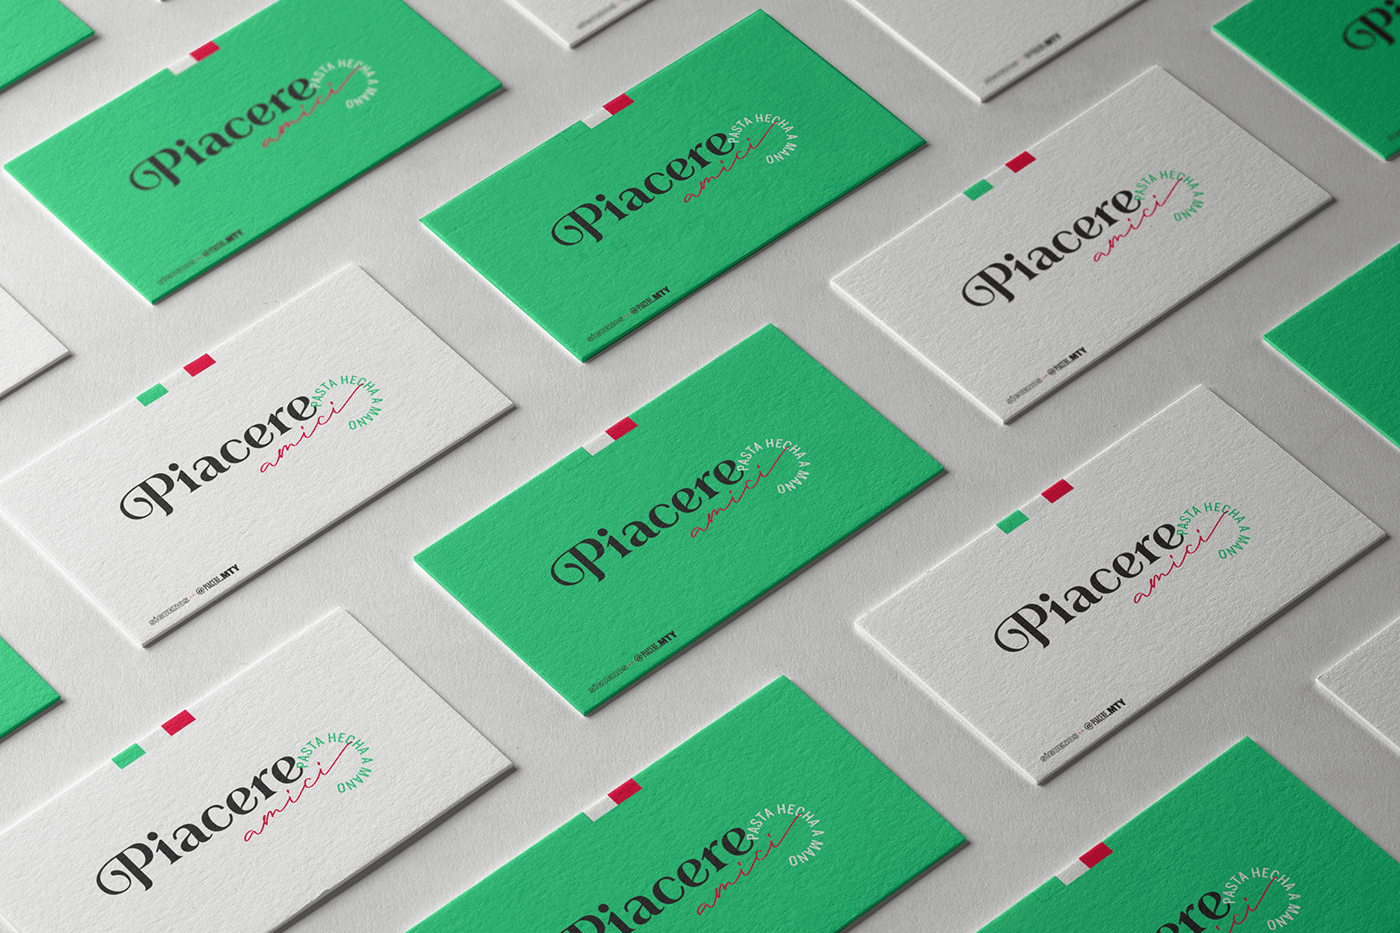 Brand Design business card diseño gráfico Logotipo marca tarjeta de presentación Tarjetas visual identity